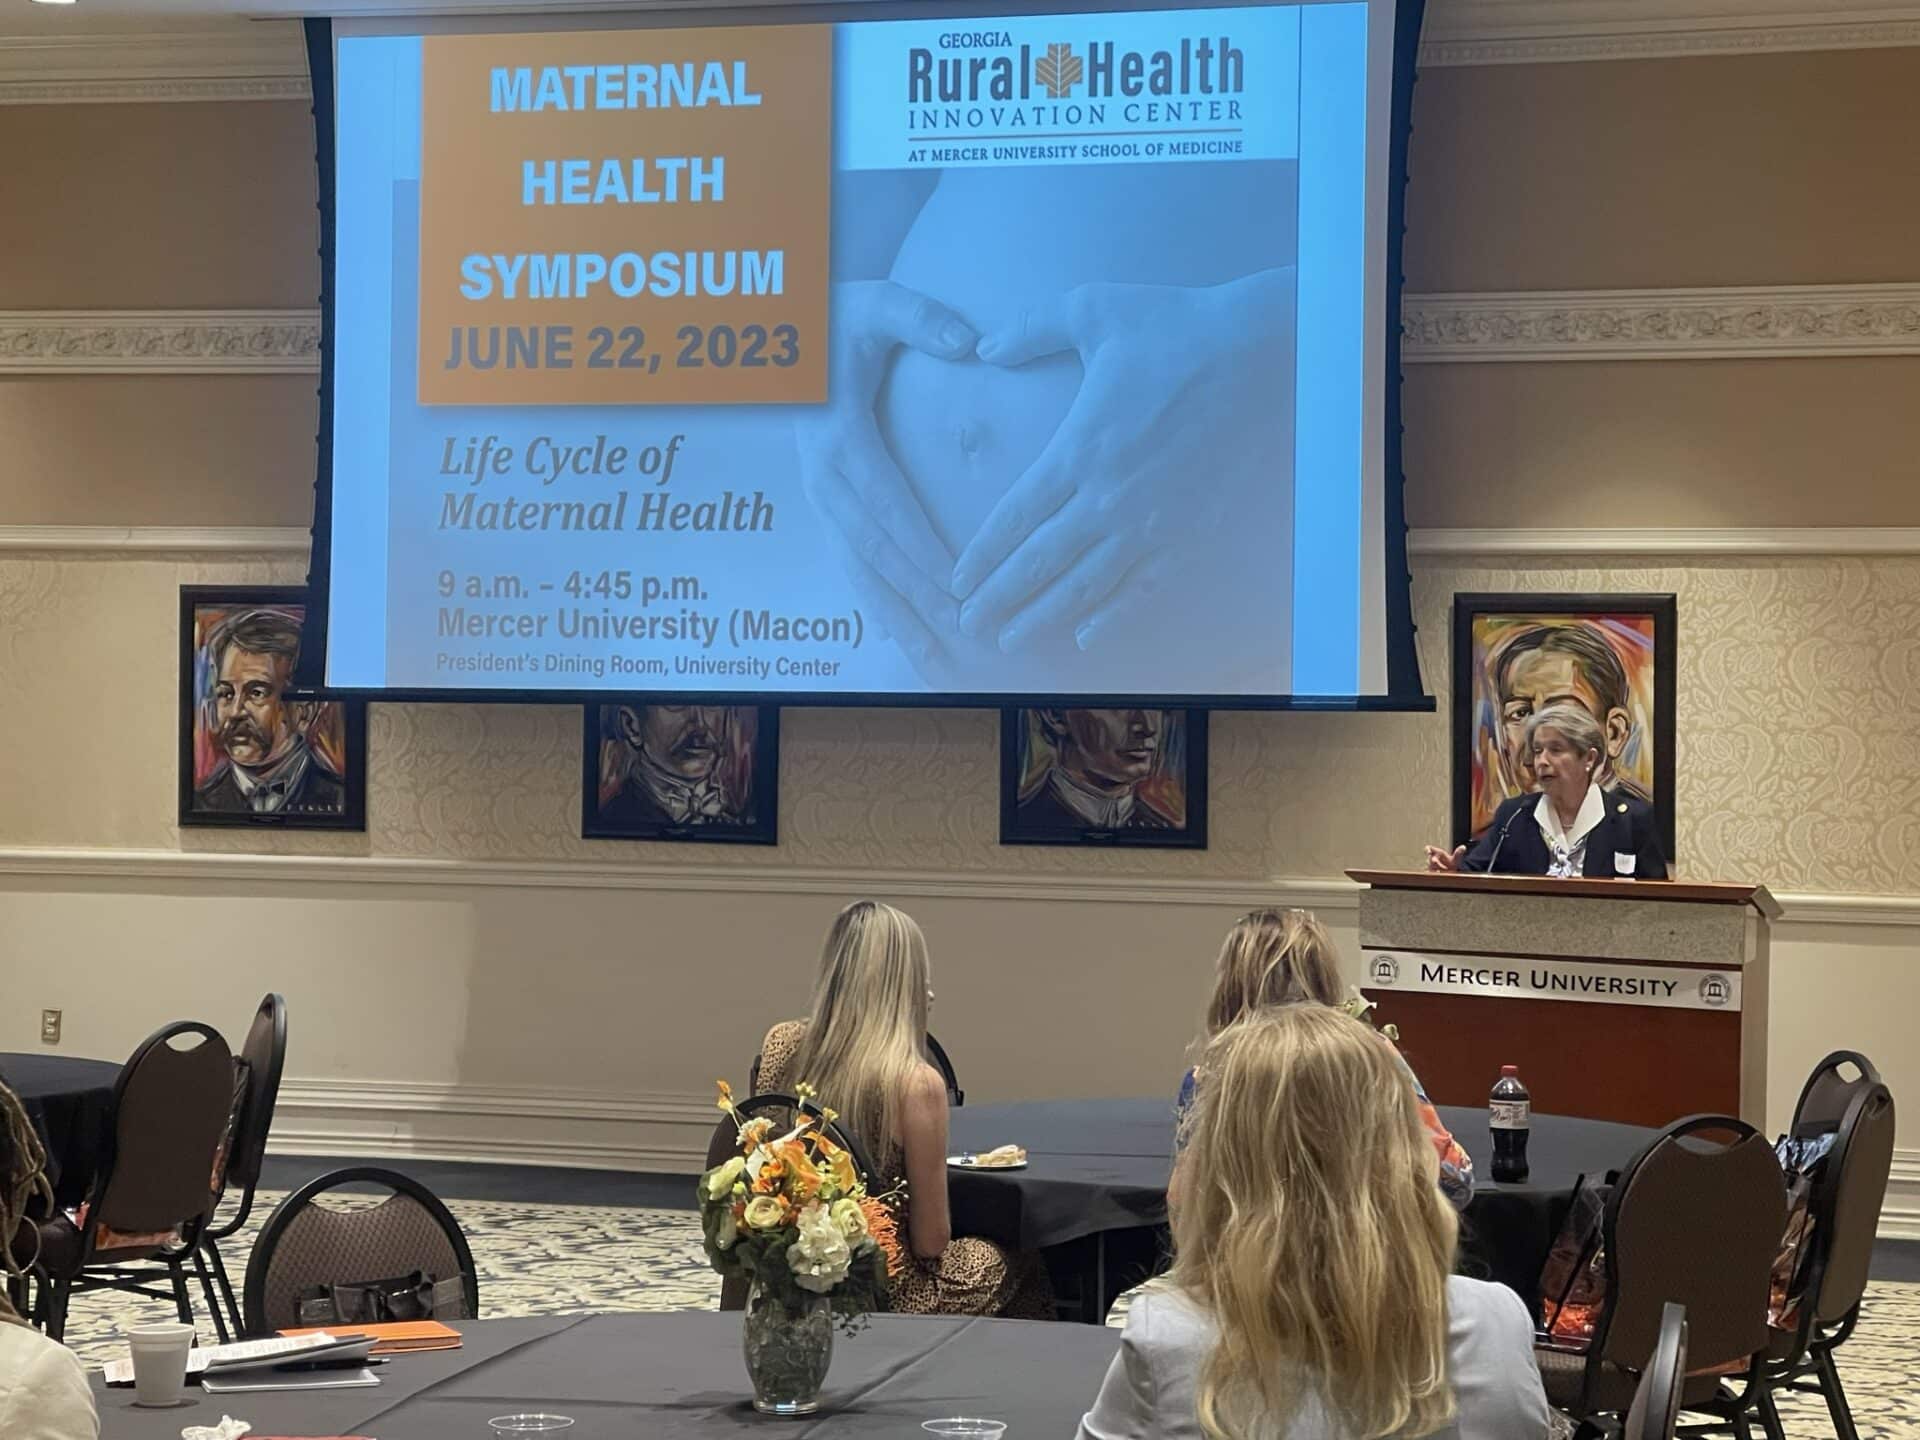 Maternal Health Symposium speaker Dr. Jean Sumner